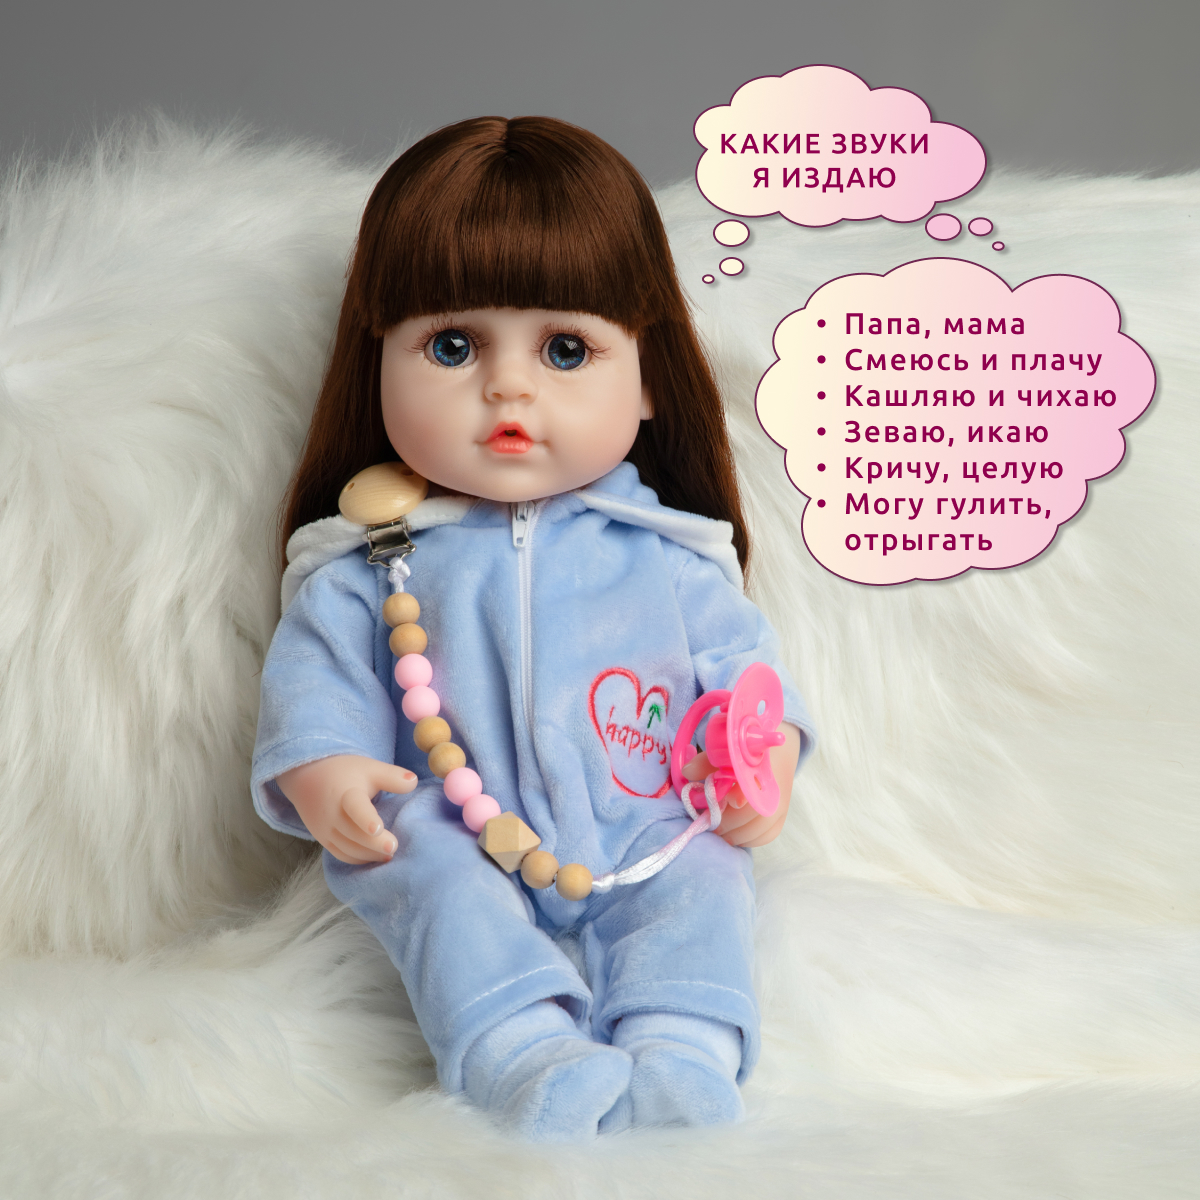 Кукла Реборн QA BABY девочка Надюша интерактивная силиконовая Пупс Reborn 38 см 3804 - фото 3